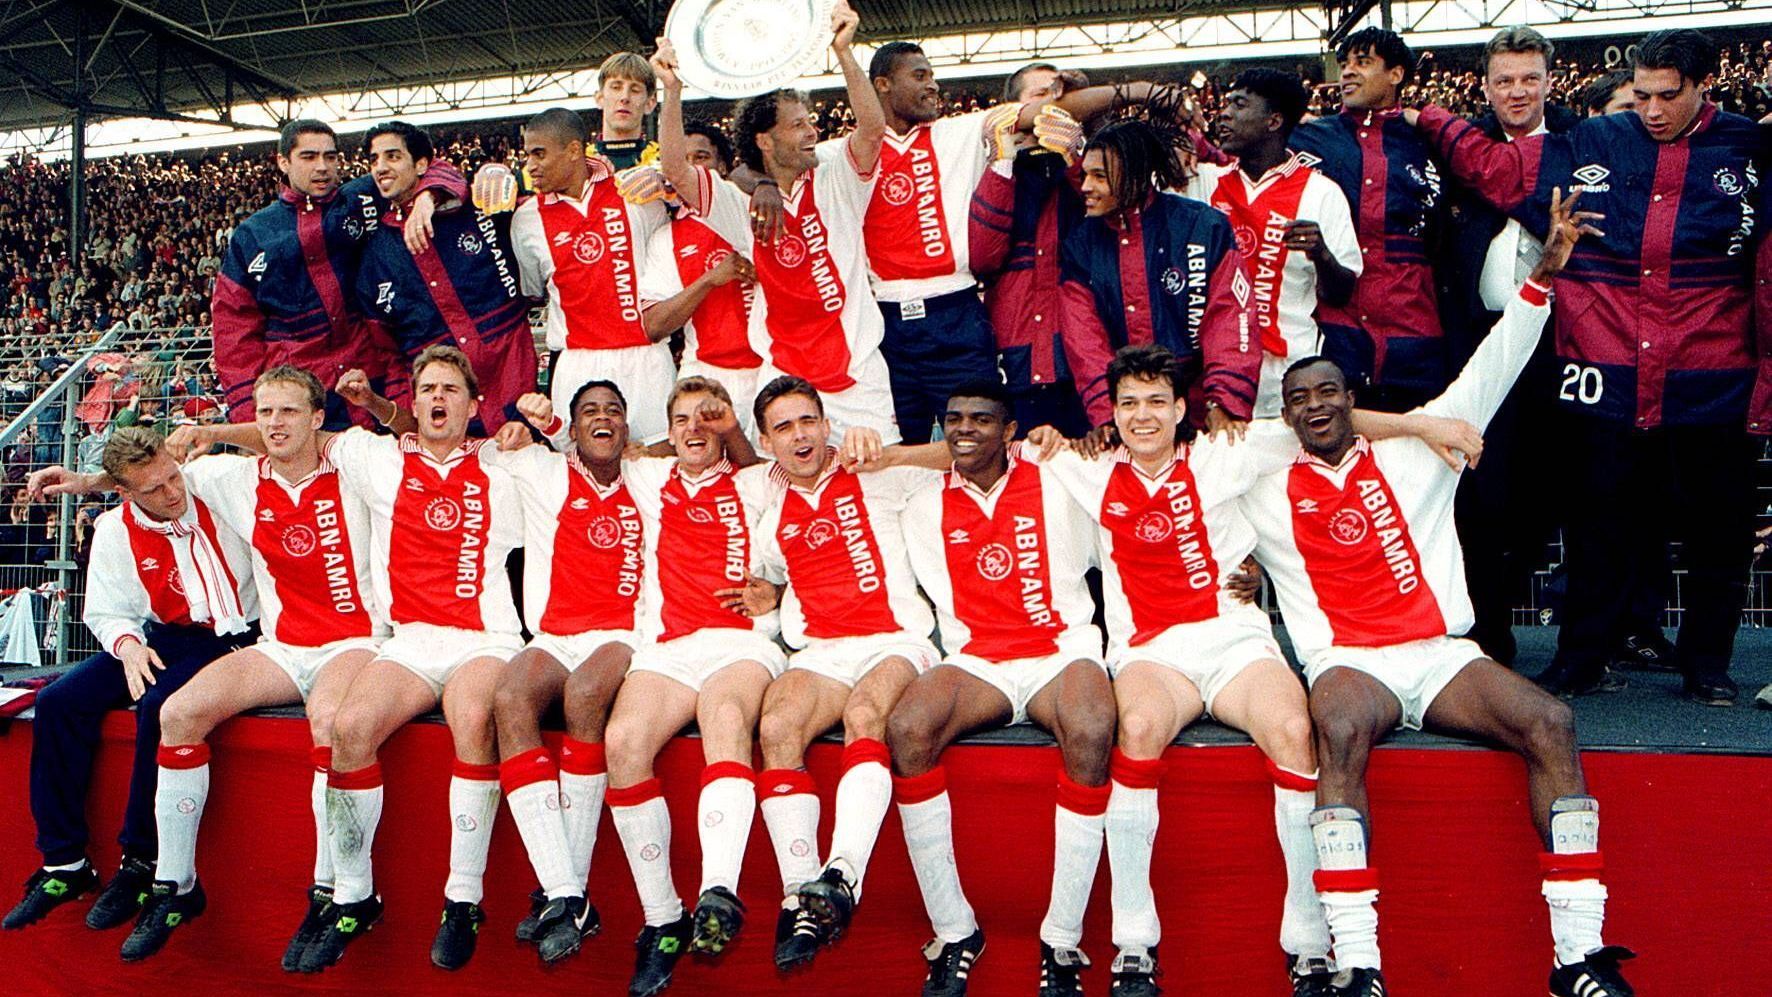 <strong>Niederlande: Ajax Amsterdam 1994/95</strong><br>
                Die Niederländer sorgten in der Saison 1994/95 für Furore: Neben dem Champions League-Titel wurde Ajax als ungeschlagenes Team der Eredivisie mit 27 Siegen Meister. &nbsp;
